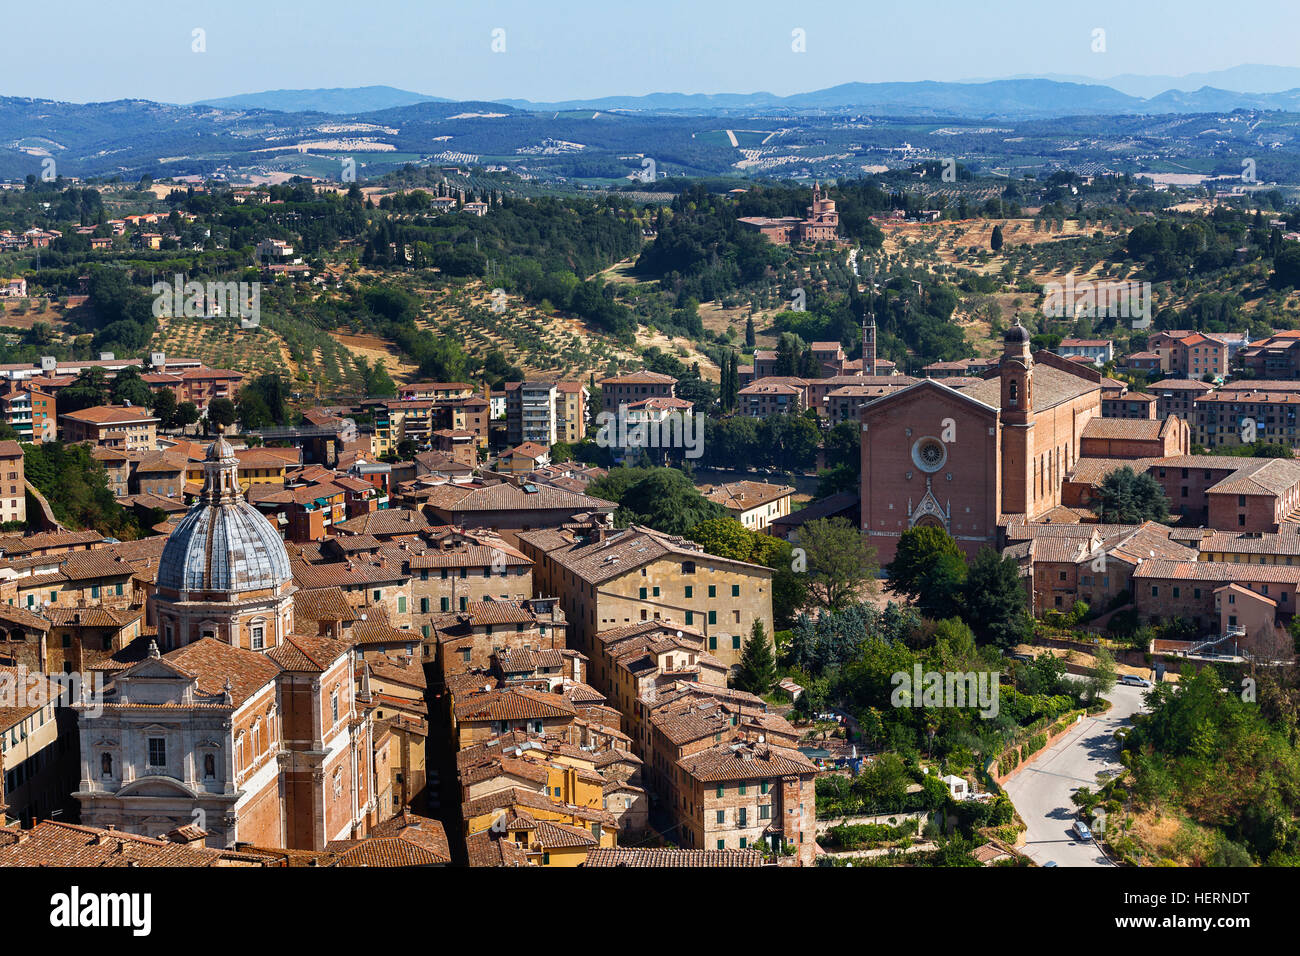 City skyline, Siena, Tuscany, Italy Stock Photo